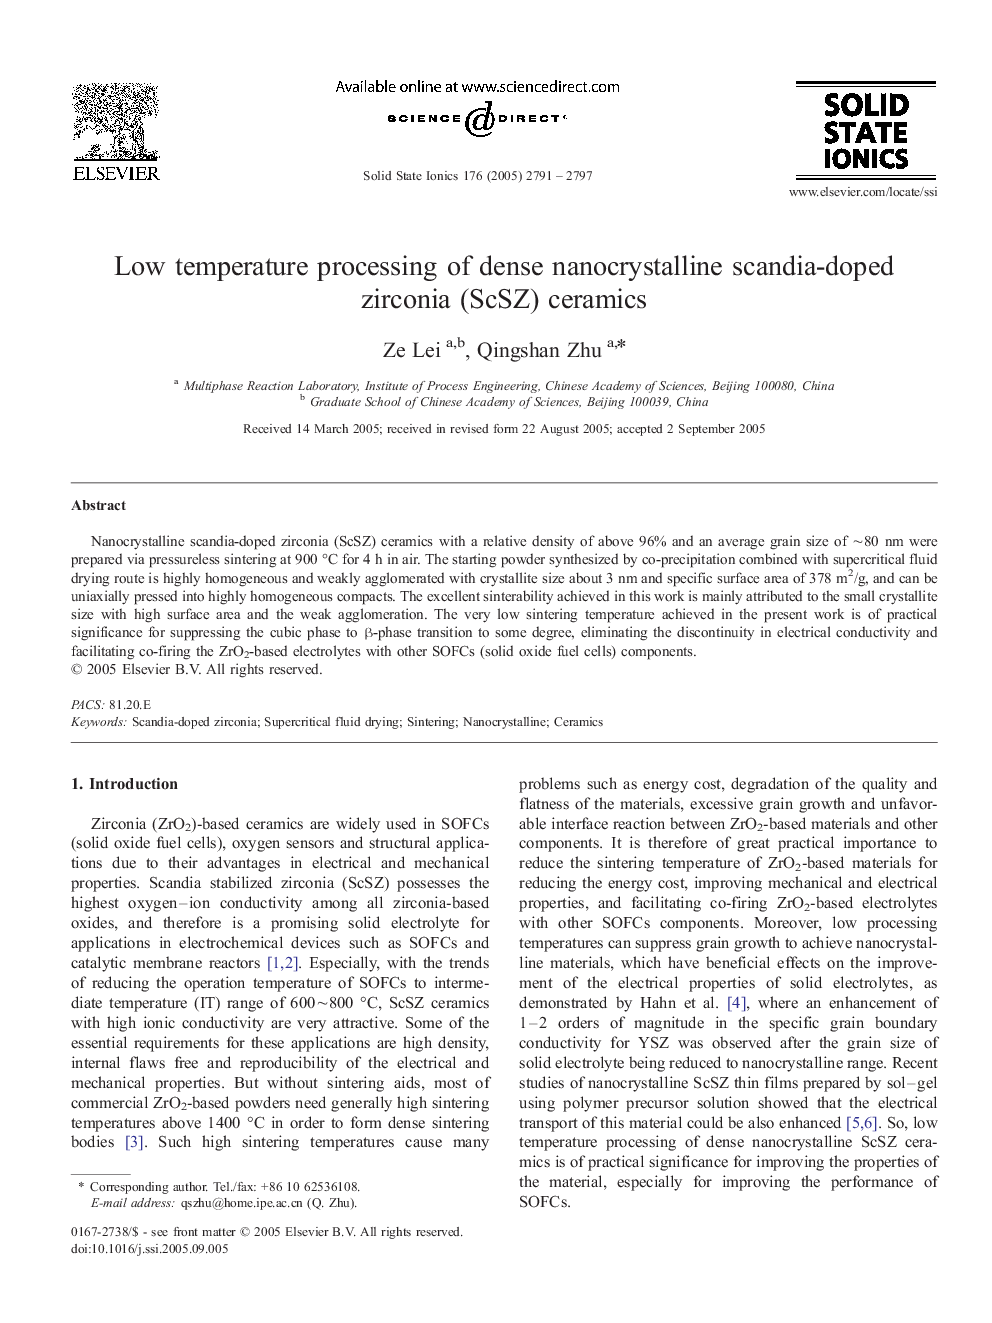 Low temperature processing of dense nanocrystalline scandia-doped zirconia (ScSZ) ceramics